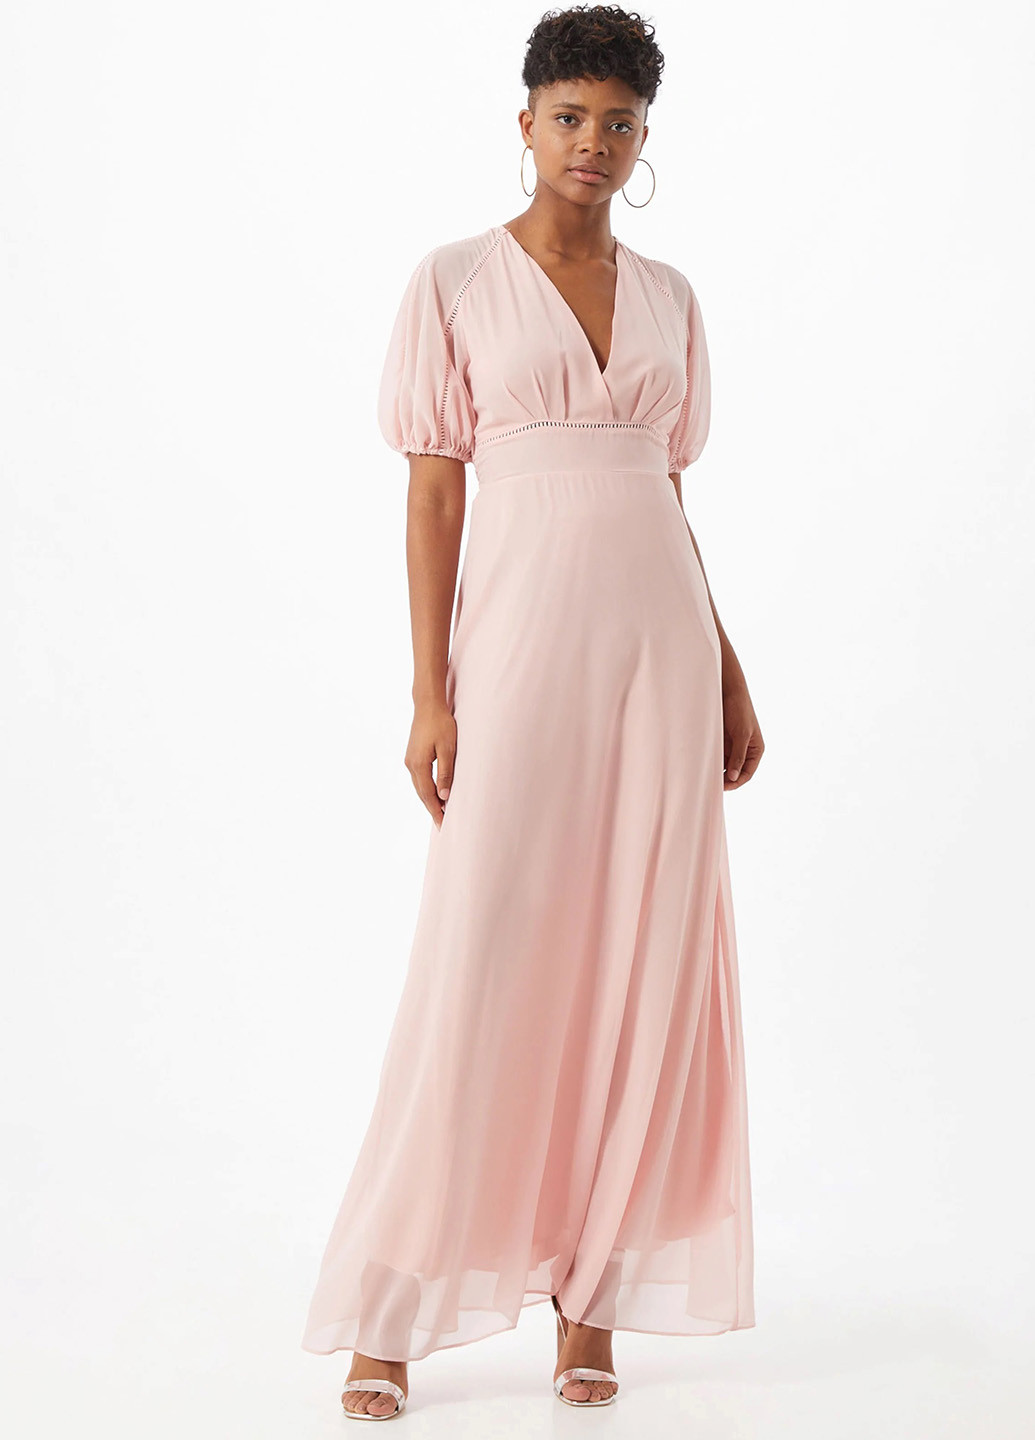 Светло-розовое вечернее платье в греческом стиле, на запах Tfnc однотонное